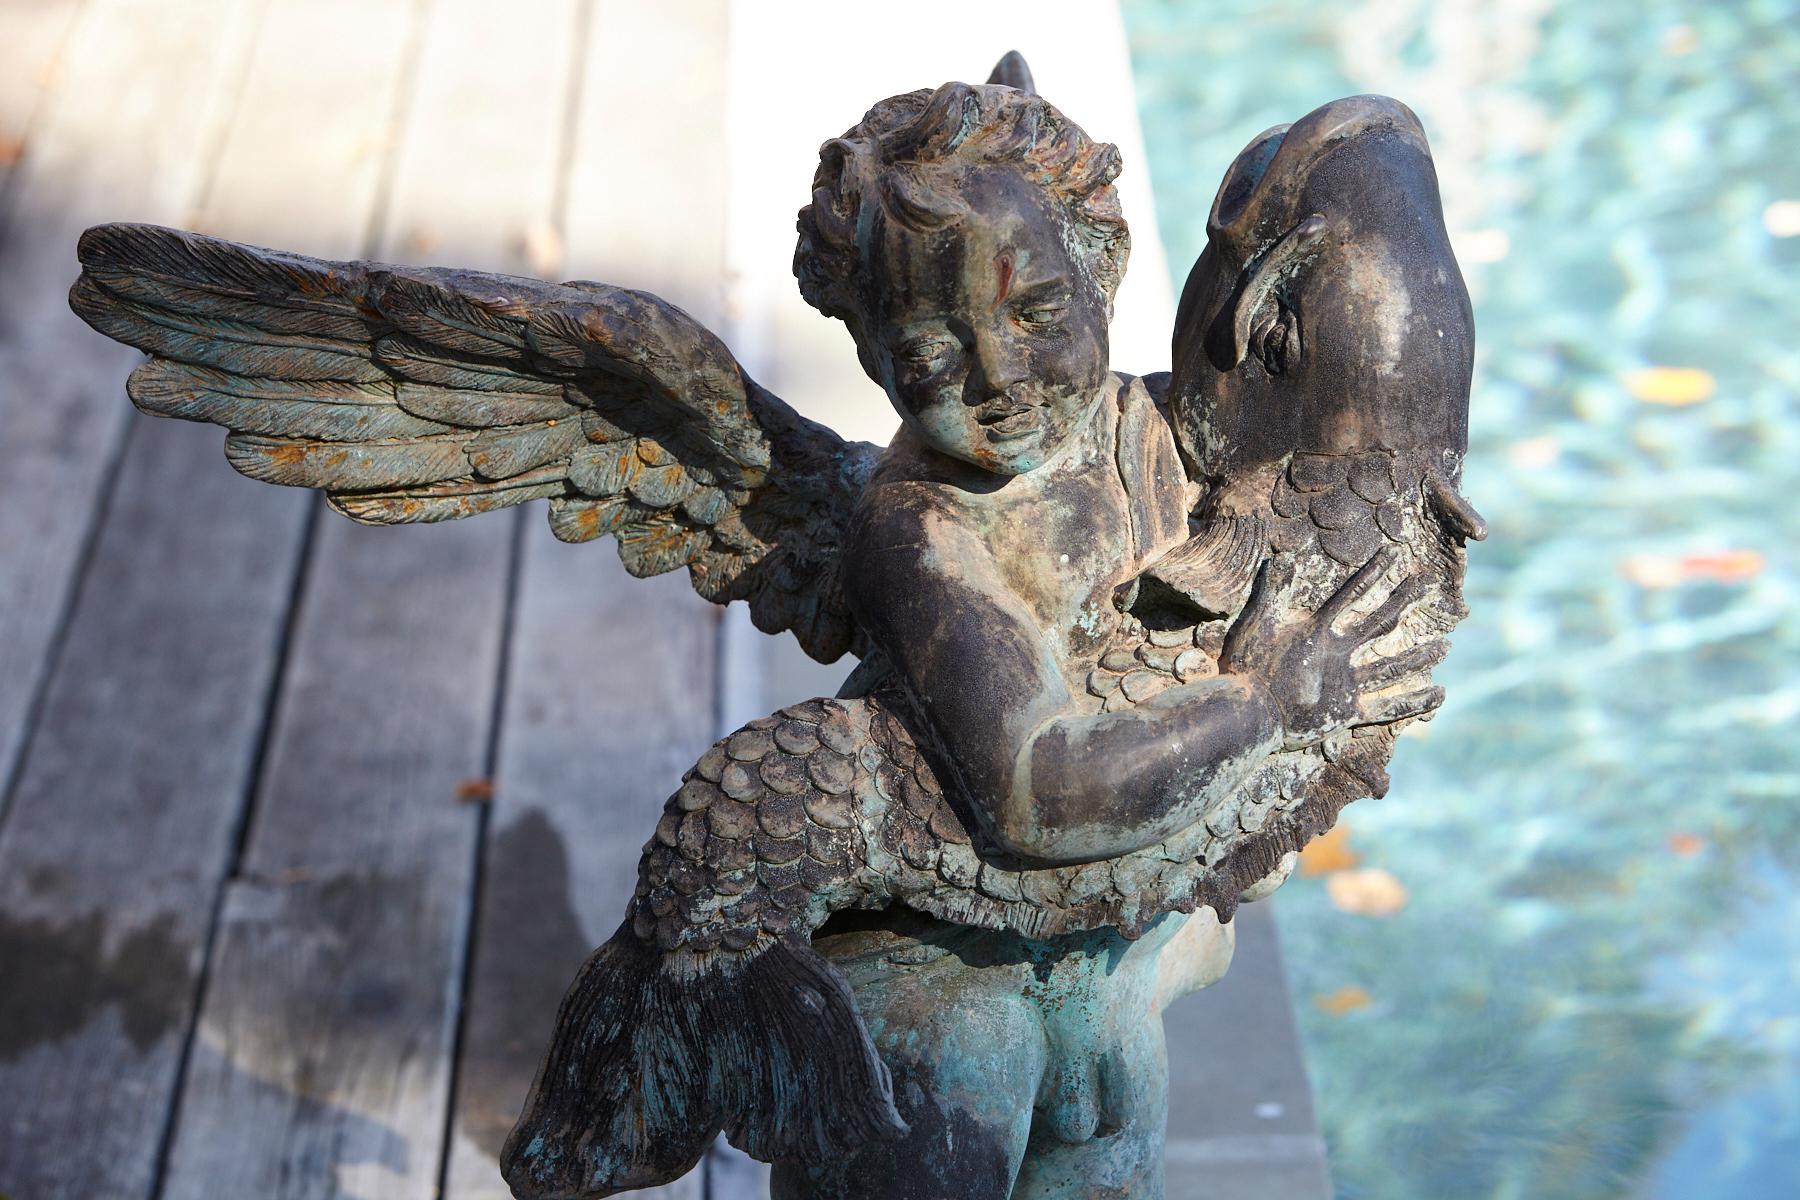 After Verrocchio, Detailed Bronze Water Garden Statue of Cherub and Fish, 1940s 3